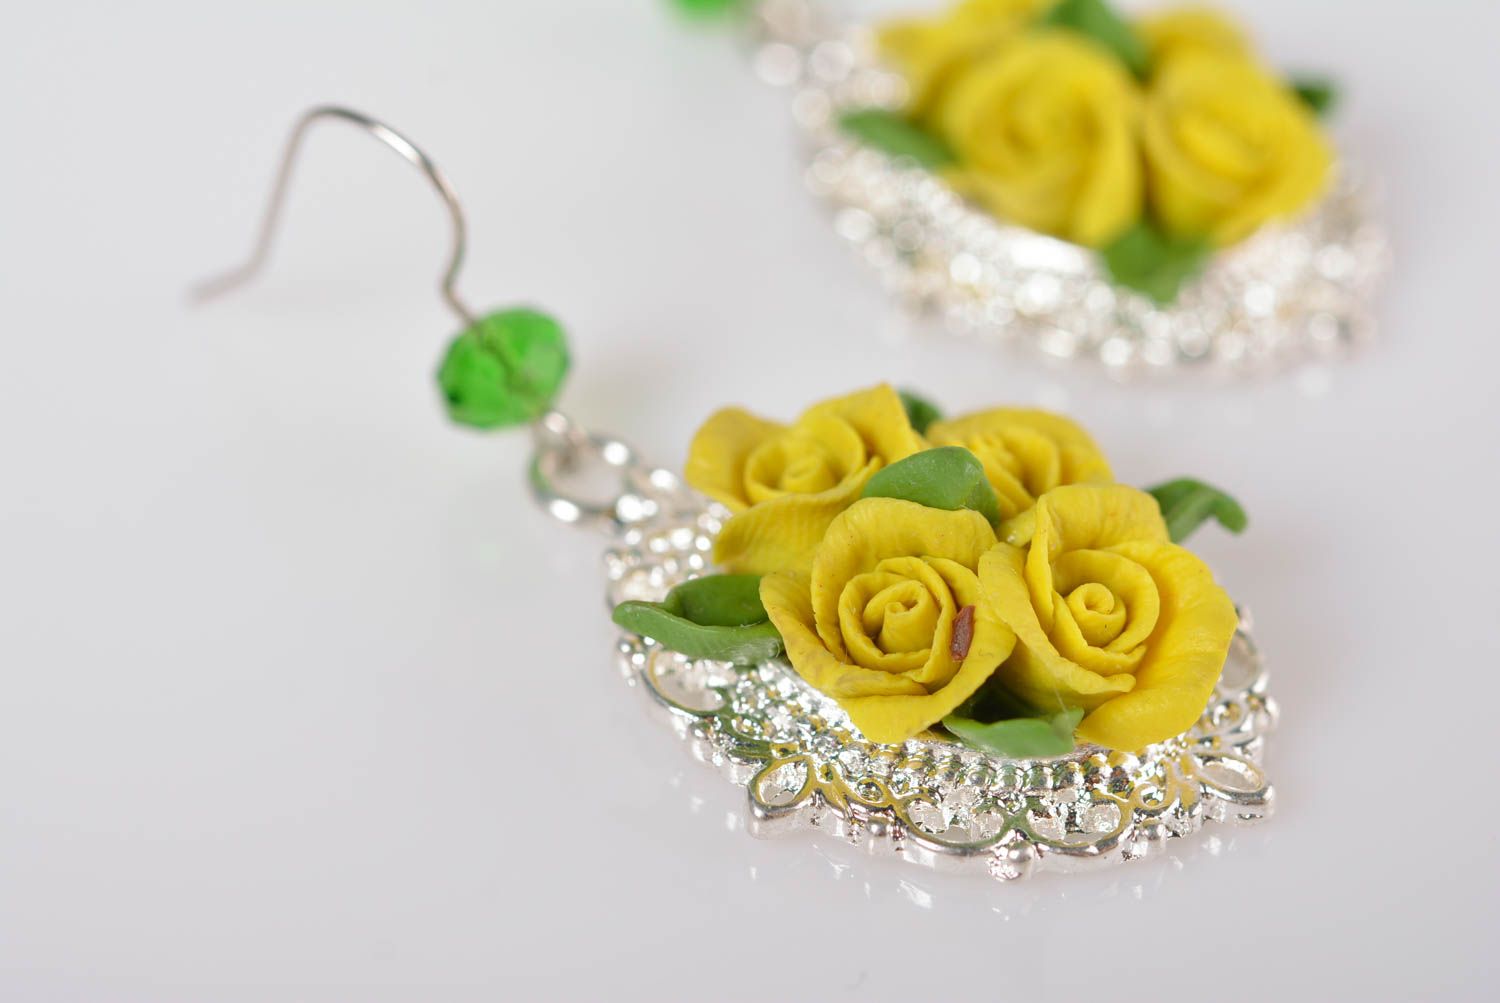 Handmade summer earrings porcelain earrings stylish bijouterie fashion jewelry photo 3